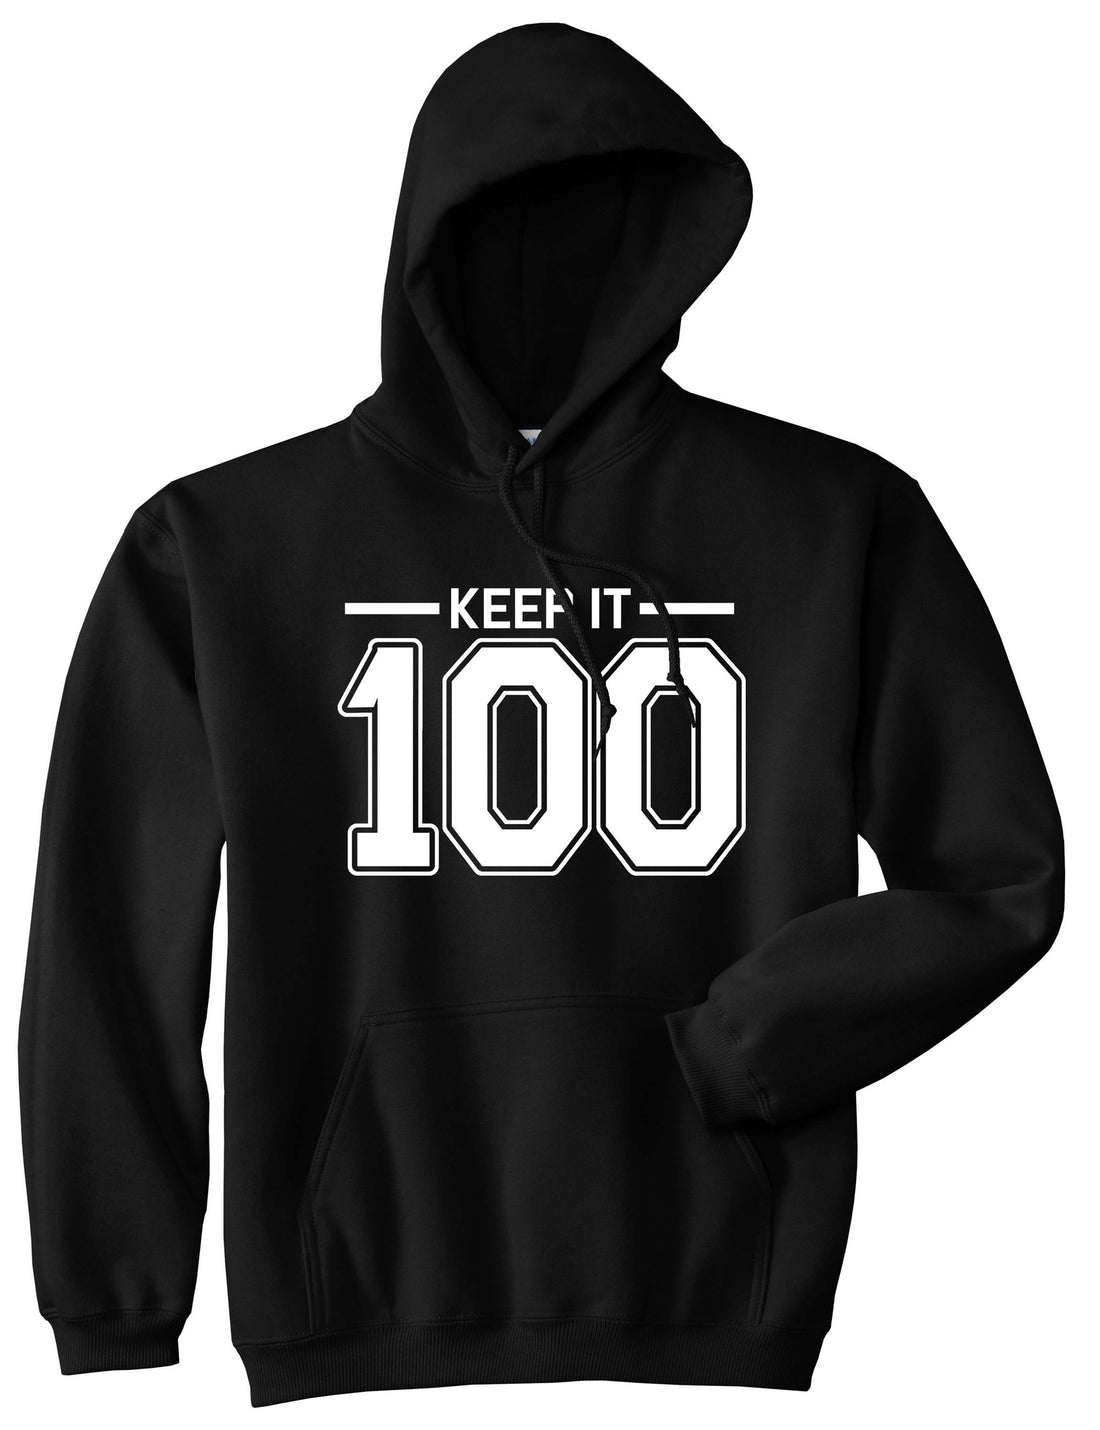 Keep It 100 Pullover Hoodie Hoody in Black by Kings Of NY